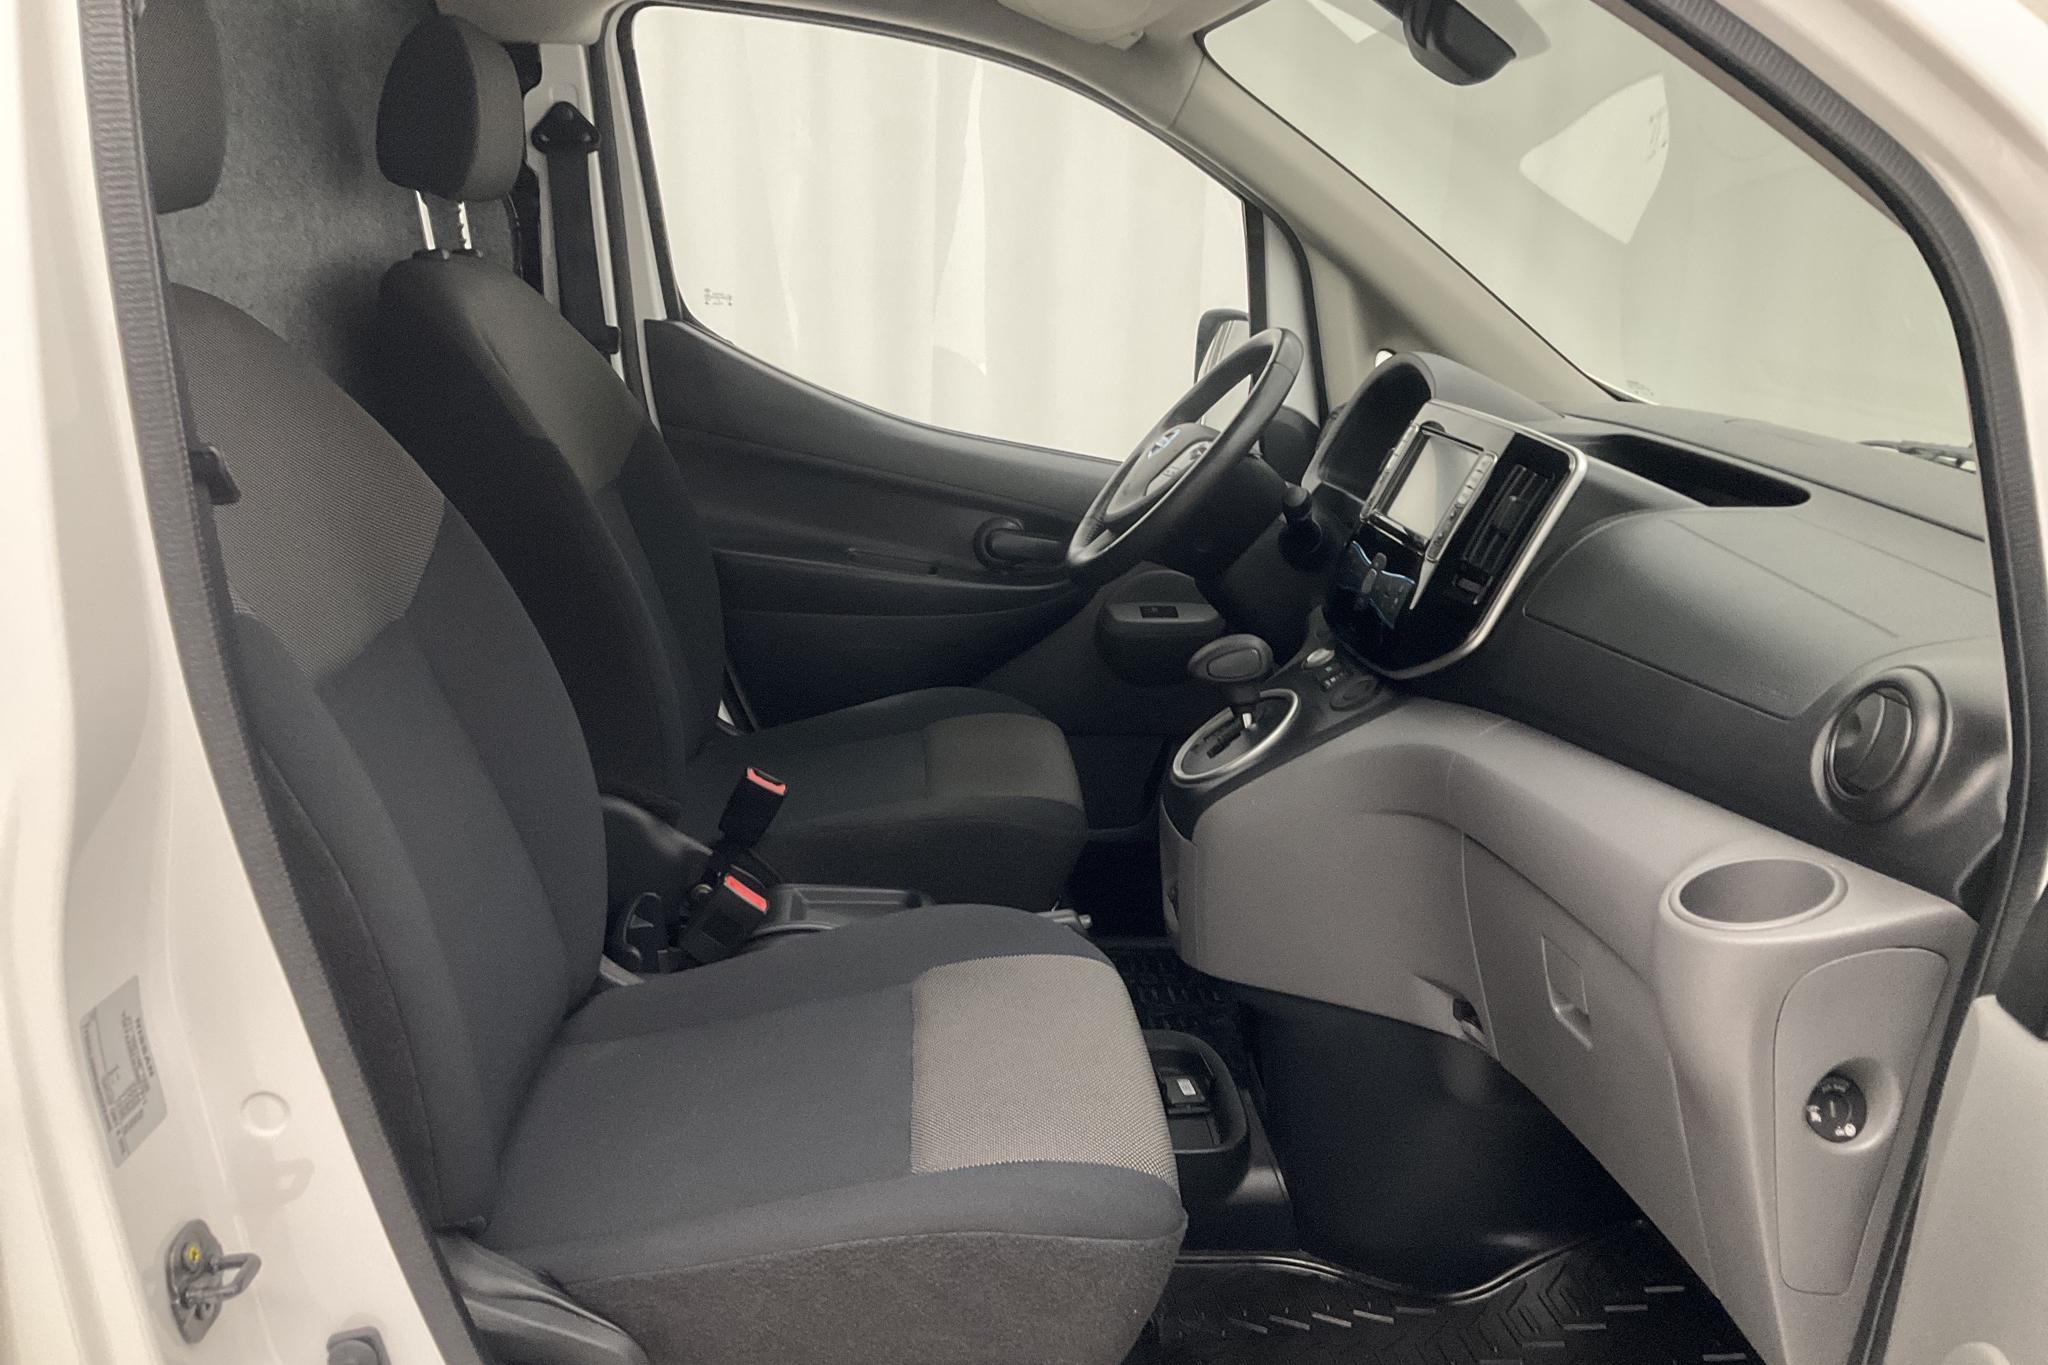 Nissan e-NV200 40,0 kWh (109hk) - 1 548 mil - Automat - vit - 2019